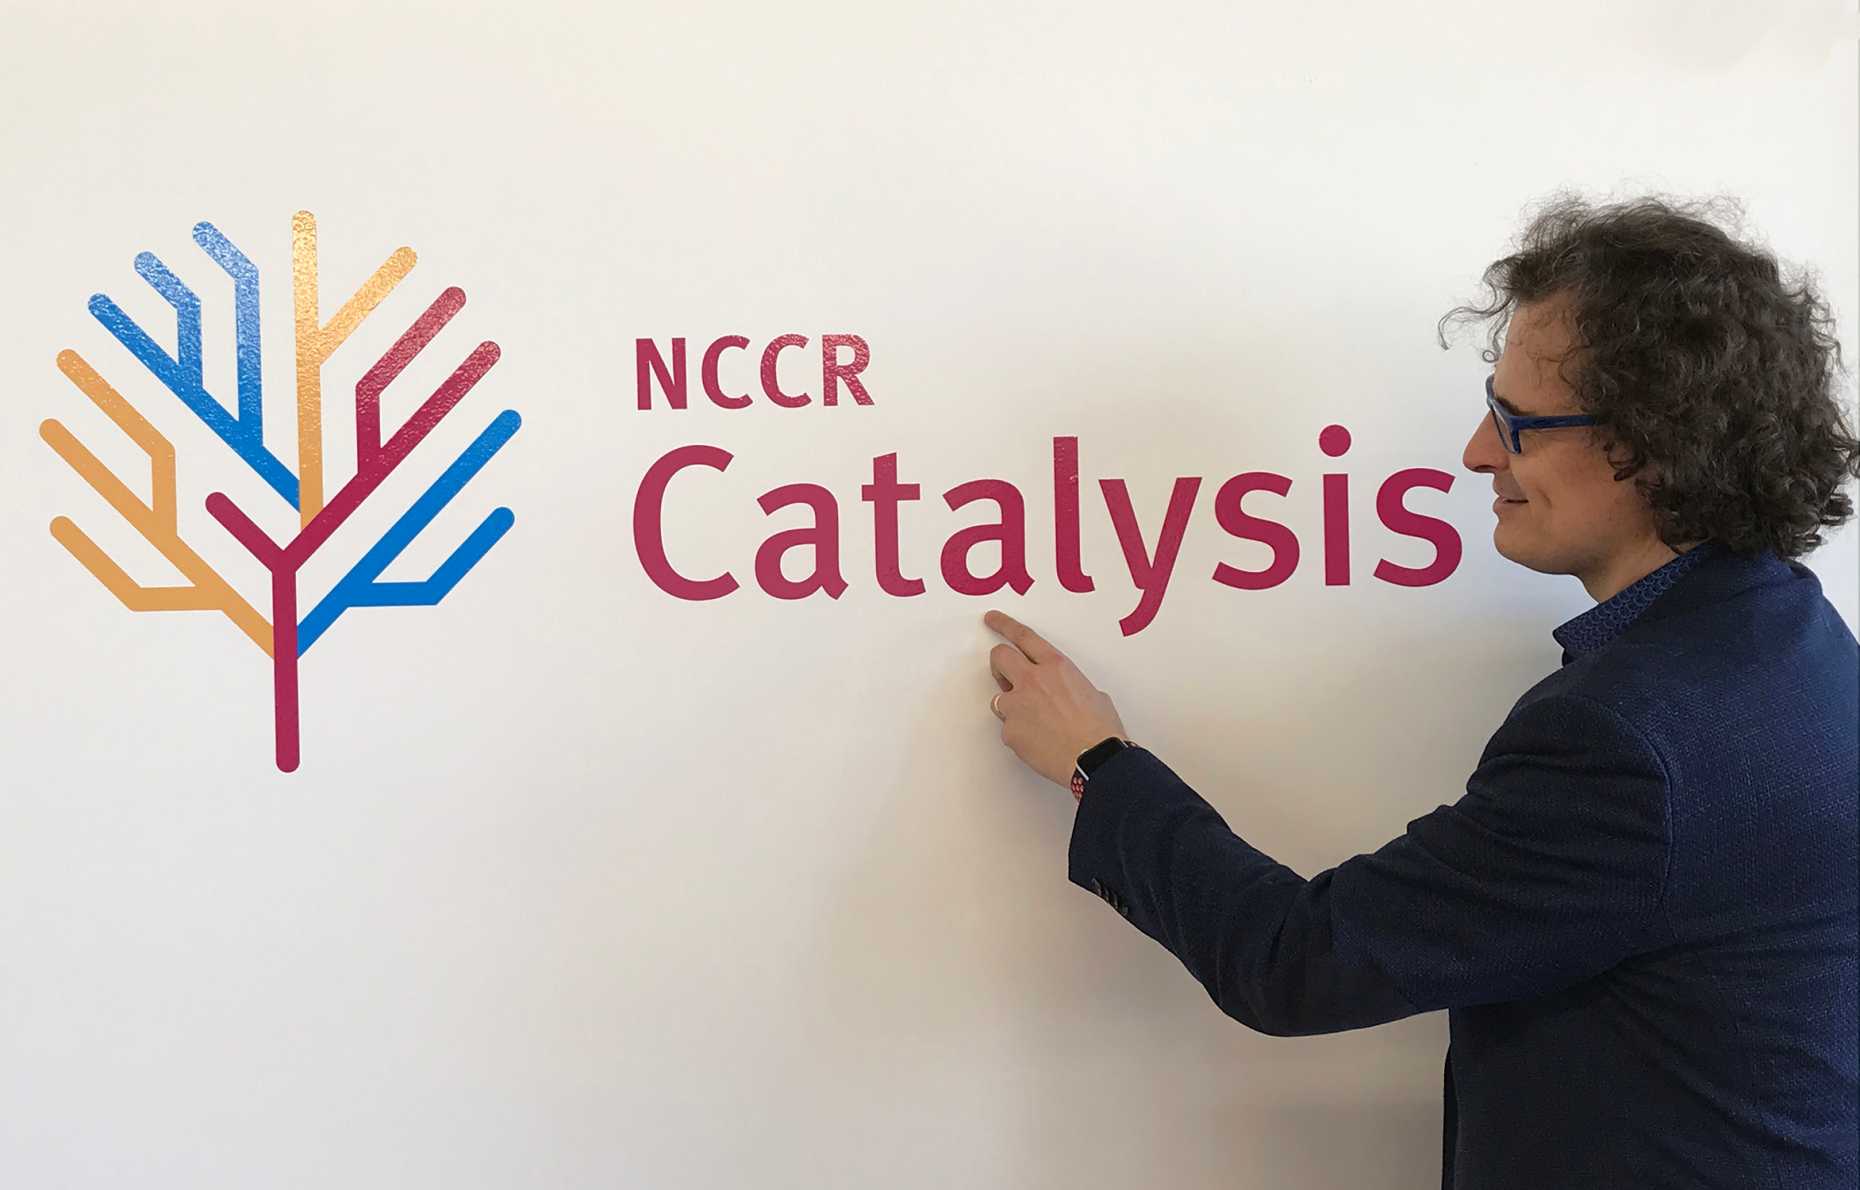 NCCR Catalysis